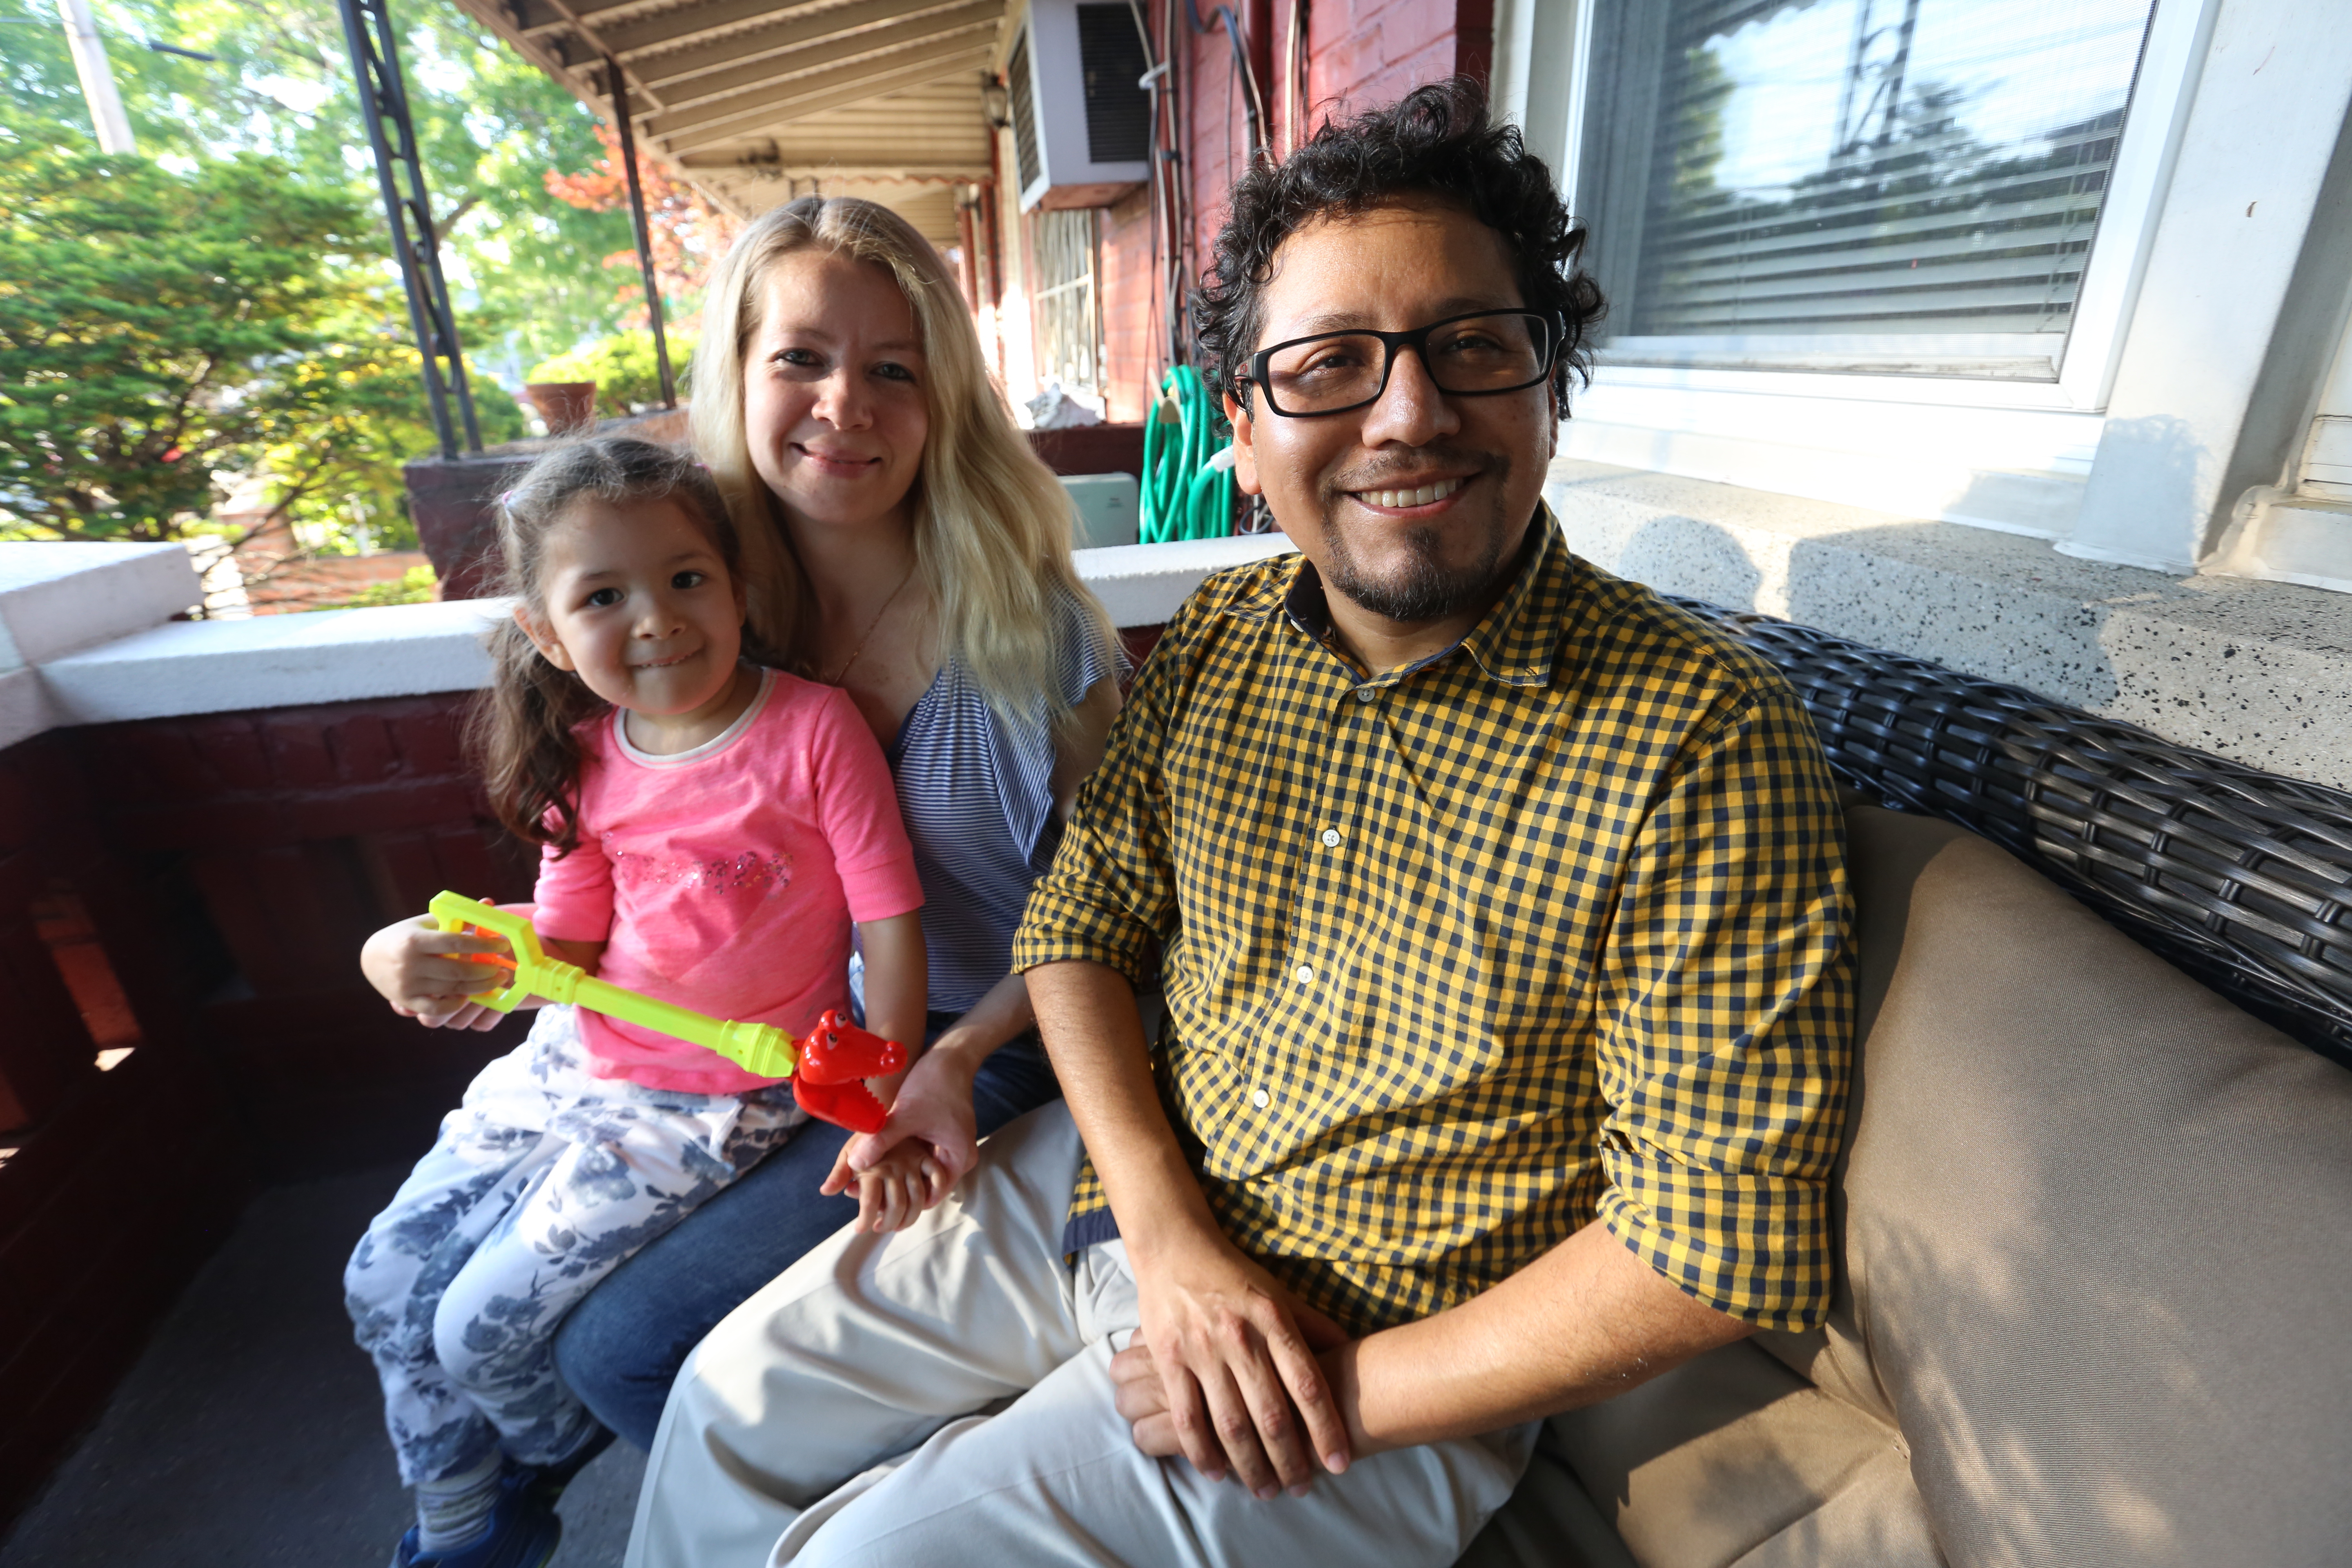 Wilber Quispe con su esposa, Olga e hija, Zoi en su nueva casa en El Bronx. Pudieron comprar su casa con el Programa de la Nueva casa que brinda la Ciudad de Nueva York.